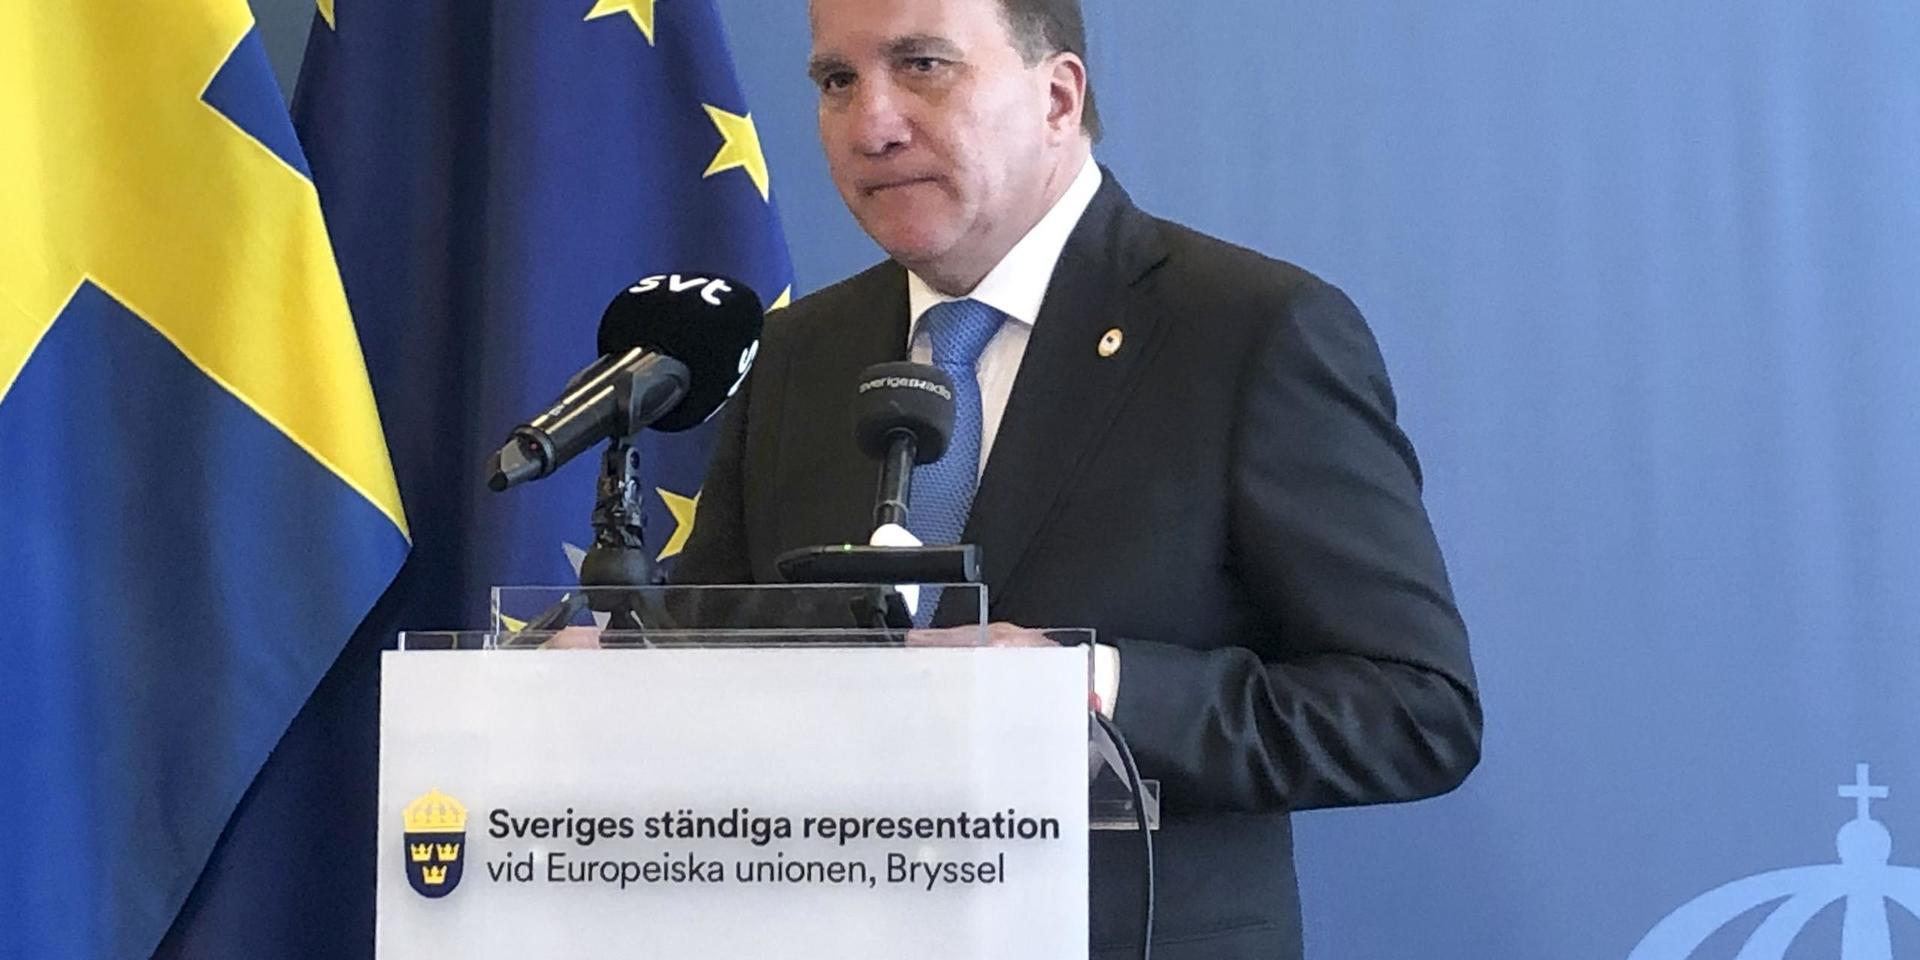 När coronapandemin i somras gjorde att toppmöteslokalerna stängdes för pressen fick statsminister Stefan Löfven (S) i stället träffa svenska journalister på Sveriges EU-representation. Arkivfoto.